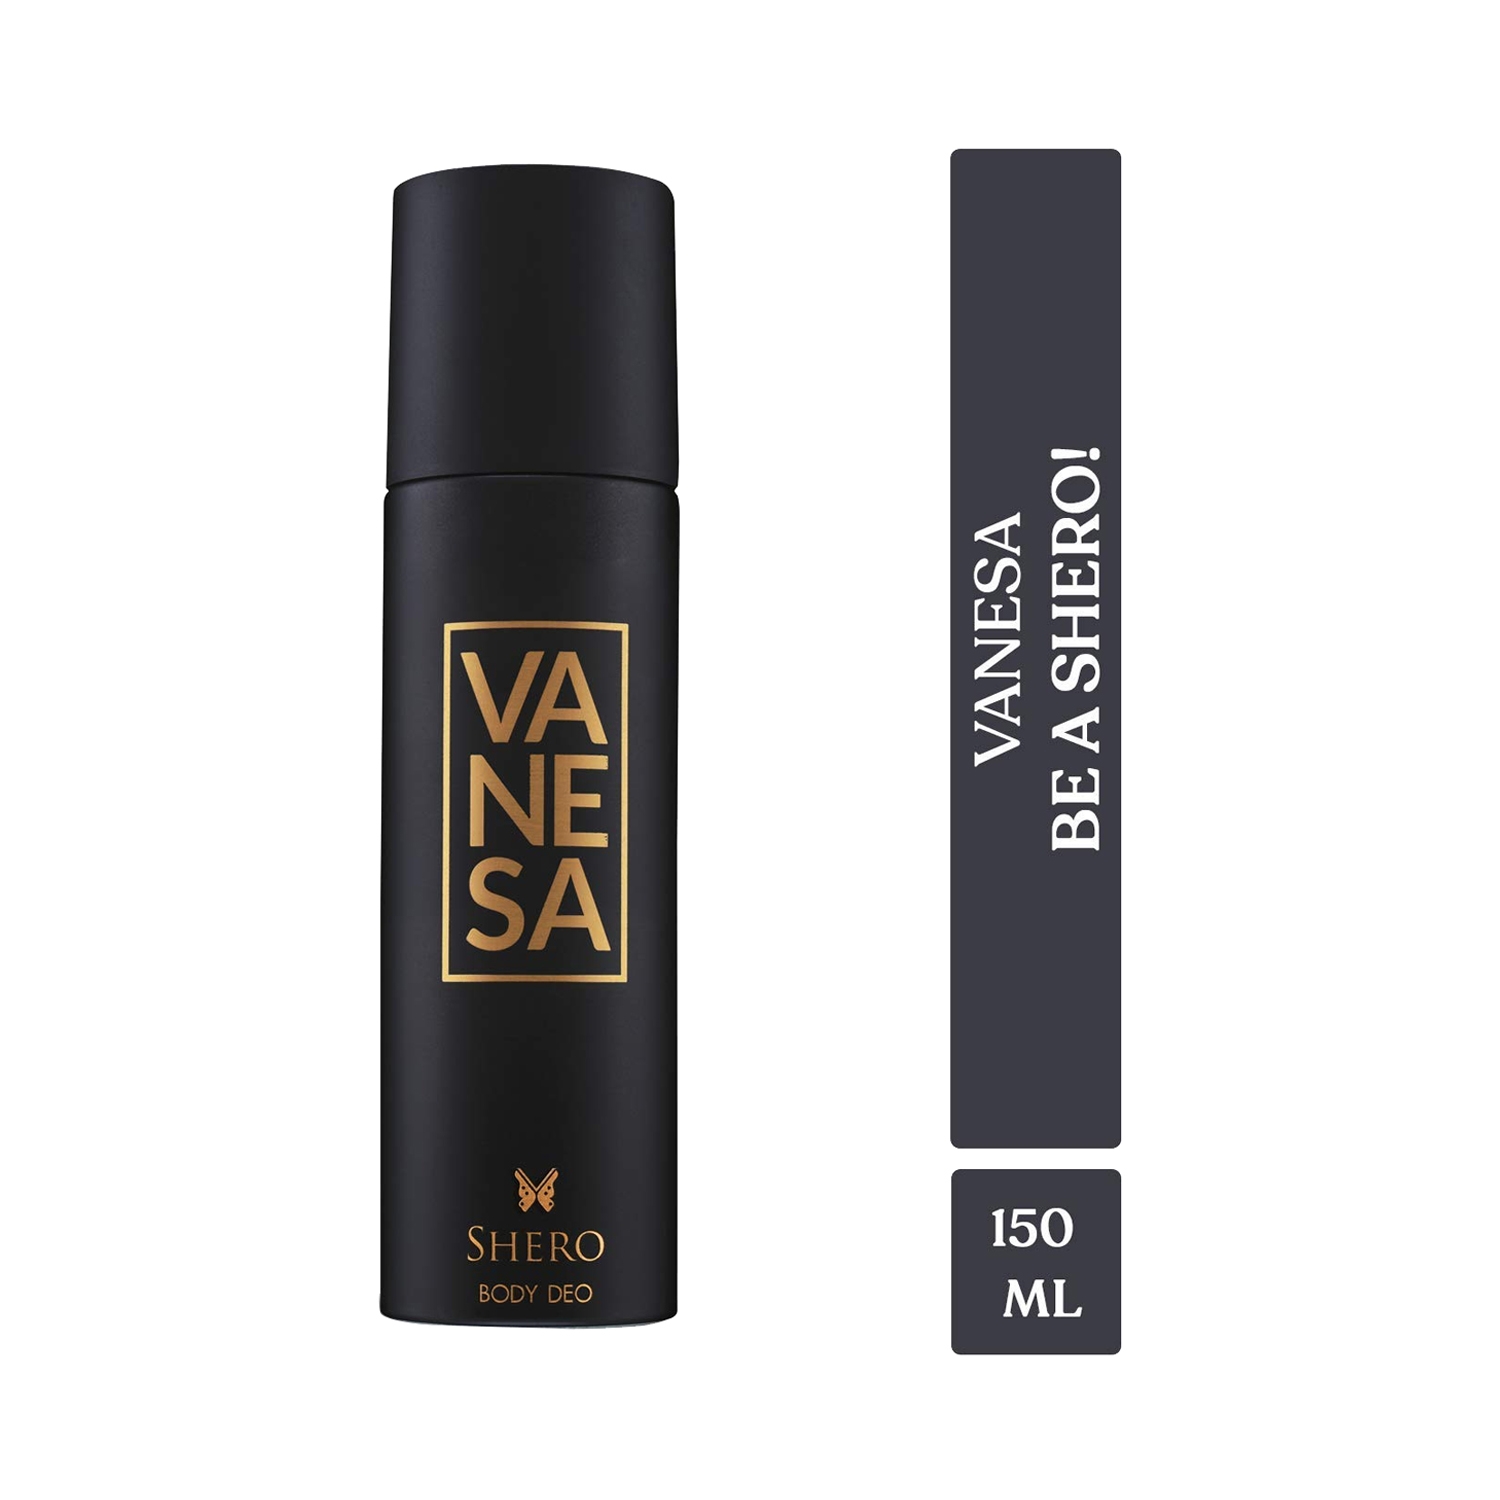 Vanesa | Vanesa Shero Deodorant Body Spray (150ml)